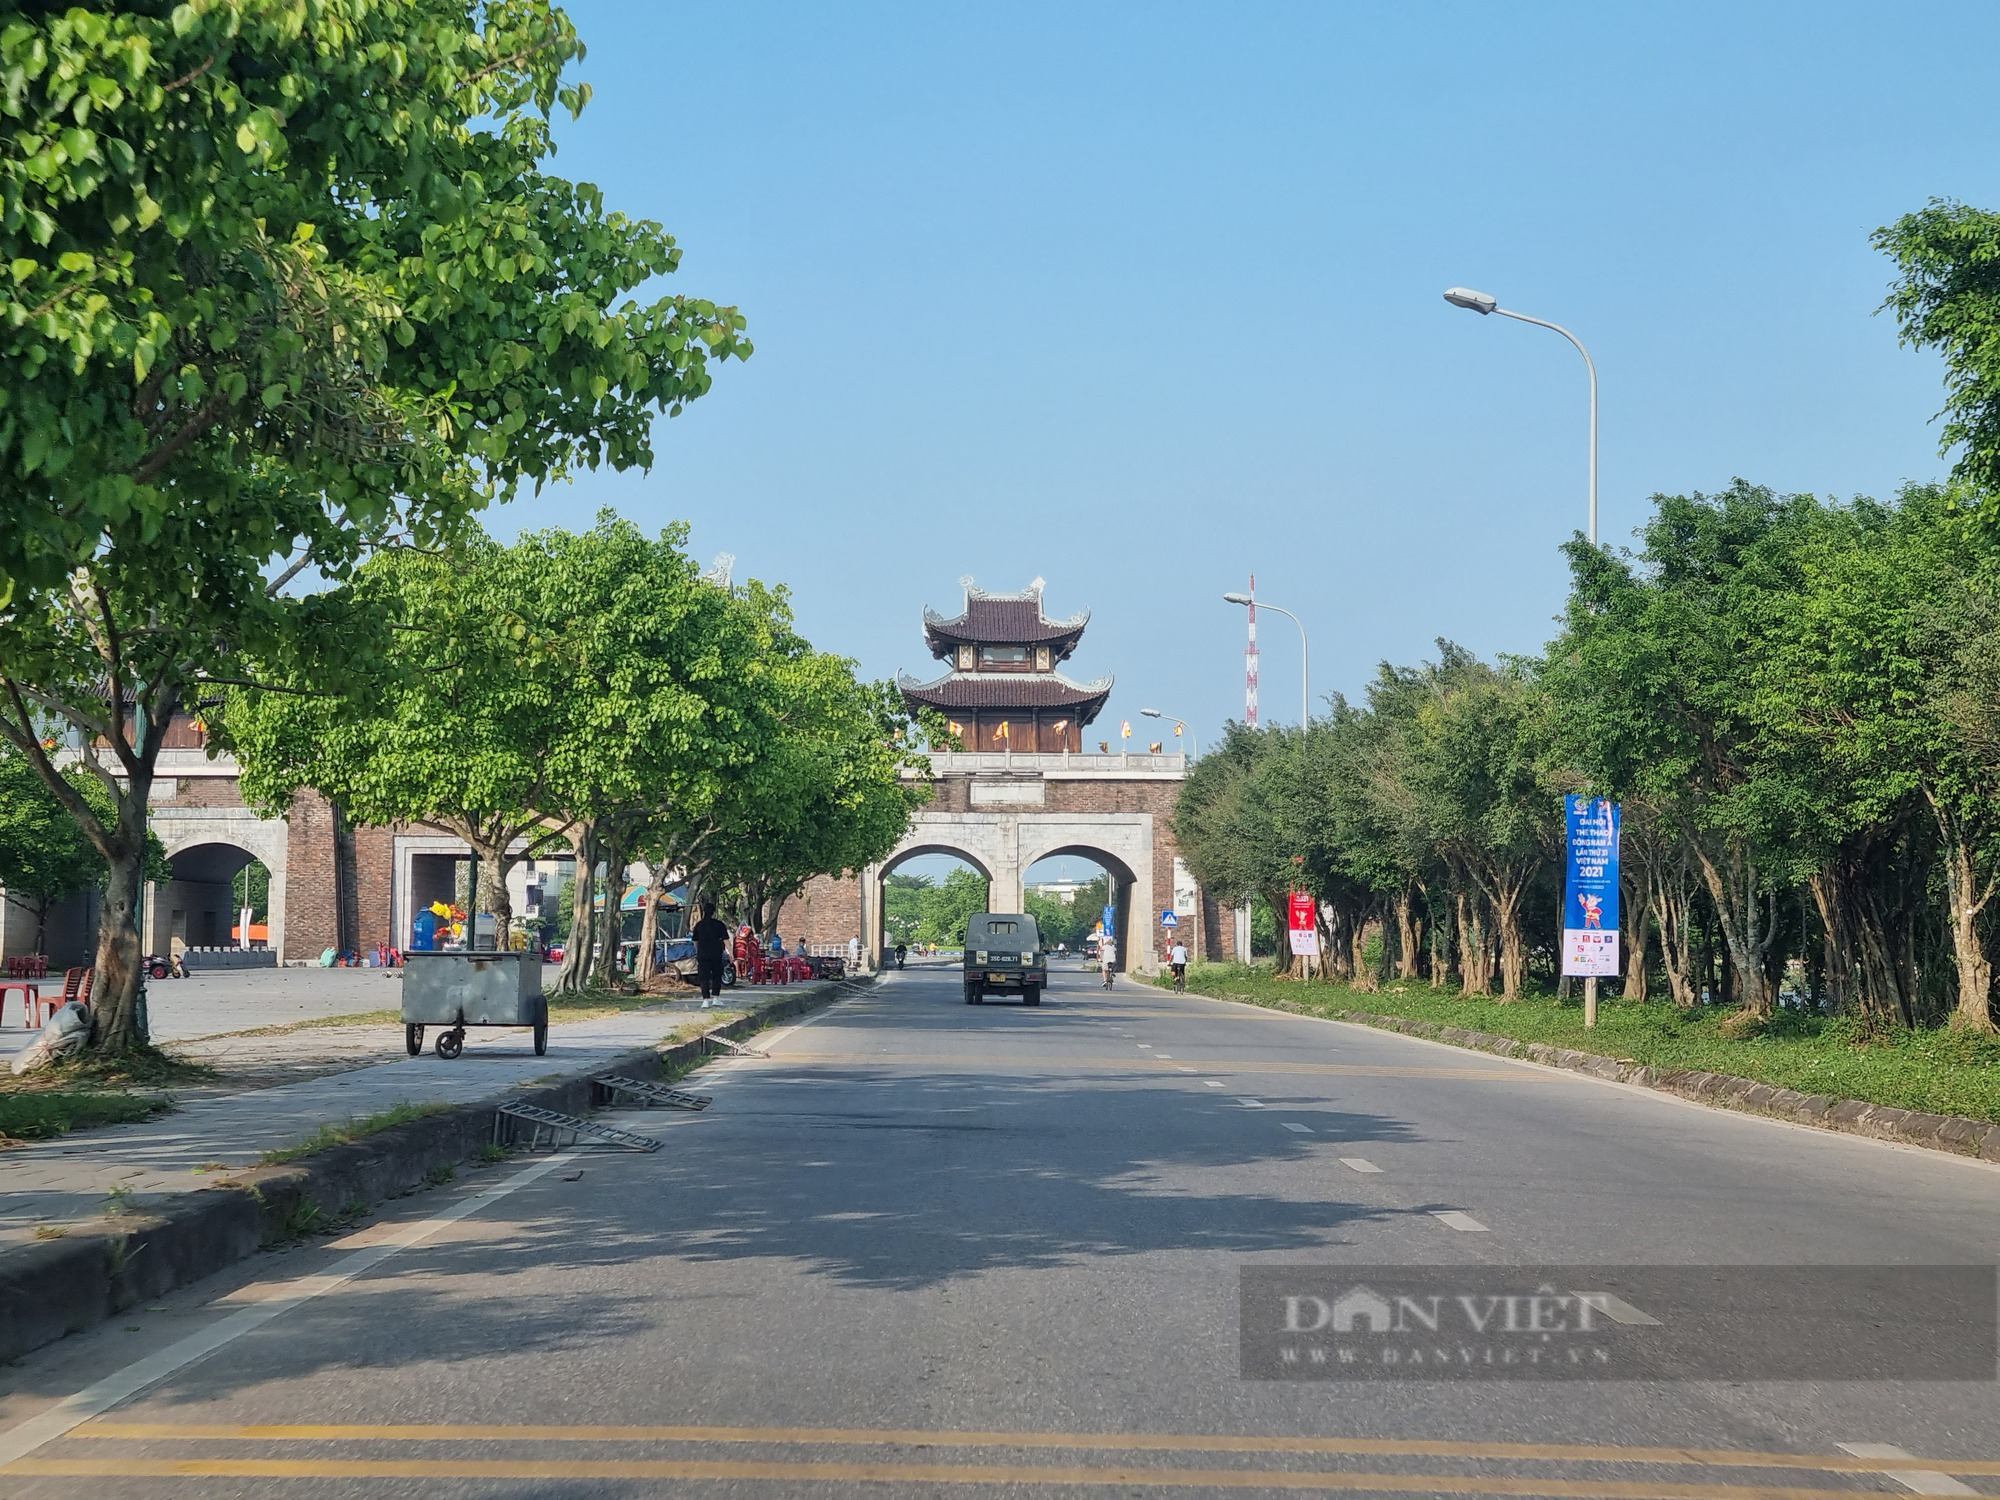 Du lịch Ninh Bình: Doanh thu ước đạt 854 tỉ đồng  - Ảnh 3.